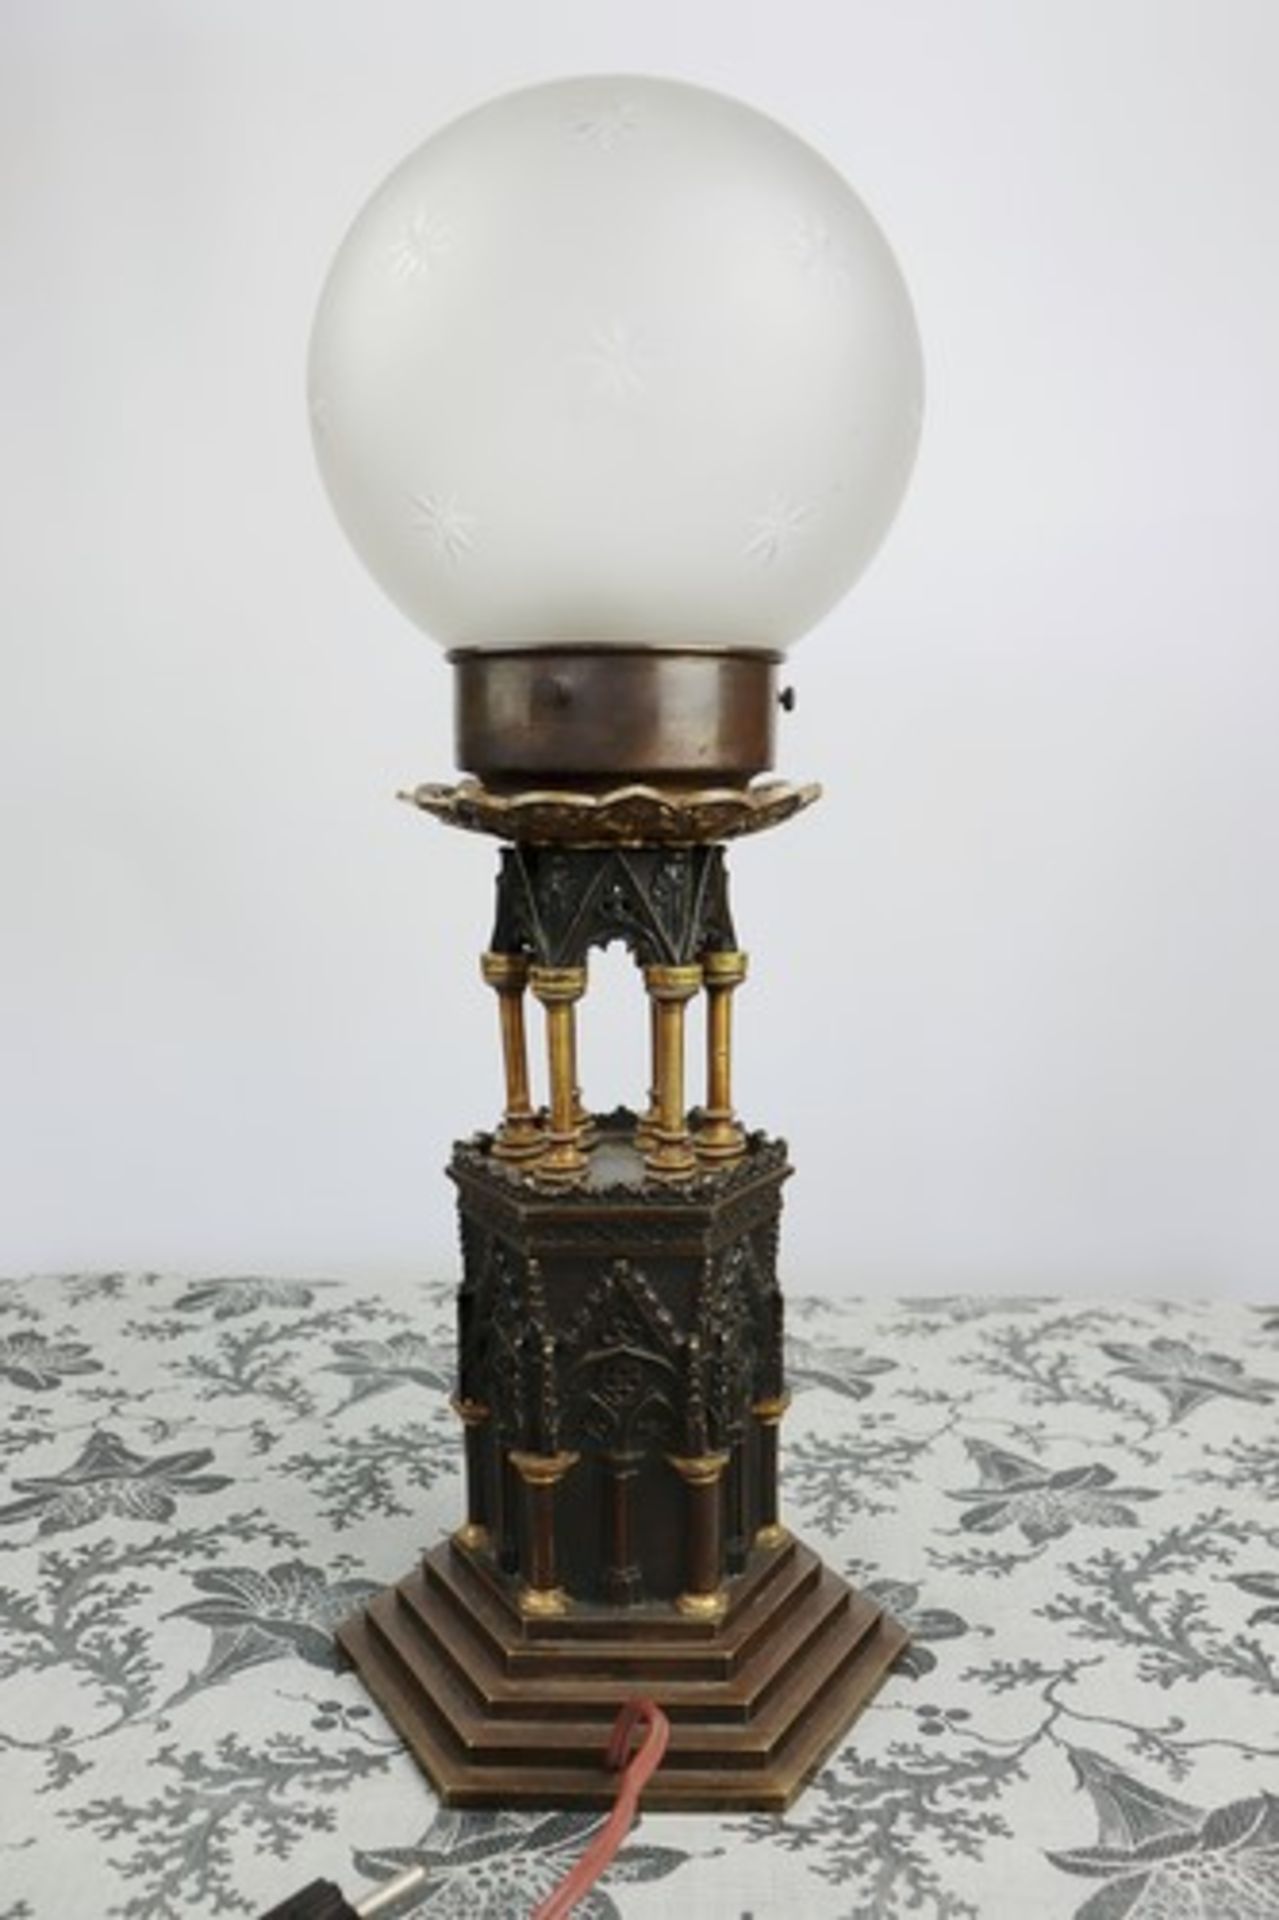 Tischlampe - Neogotikum1860, Bronze/Messing, einflammig, hexagonaler, mehrfach abgetreppter Stand, - Image 6 of 9